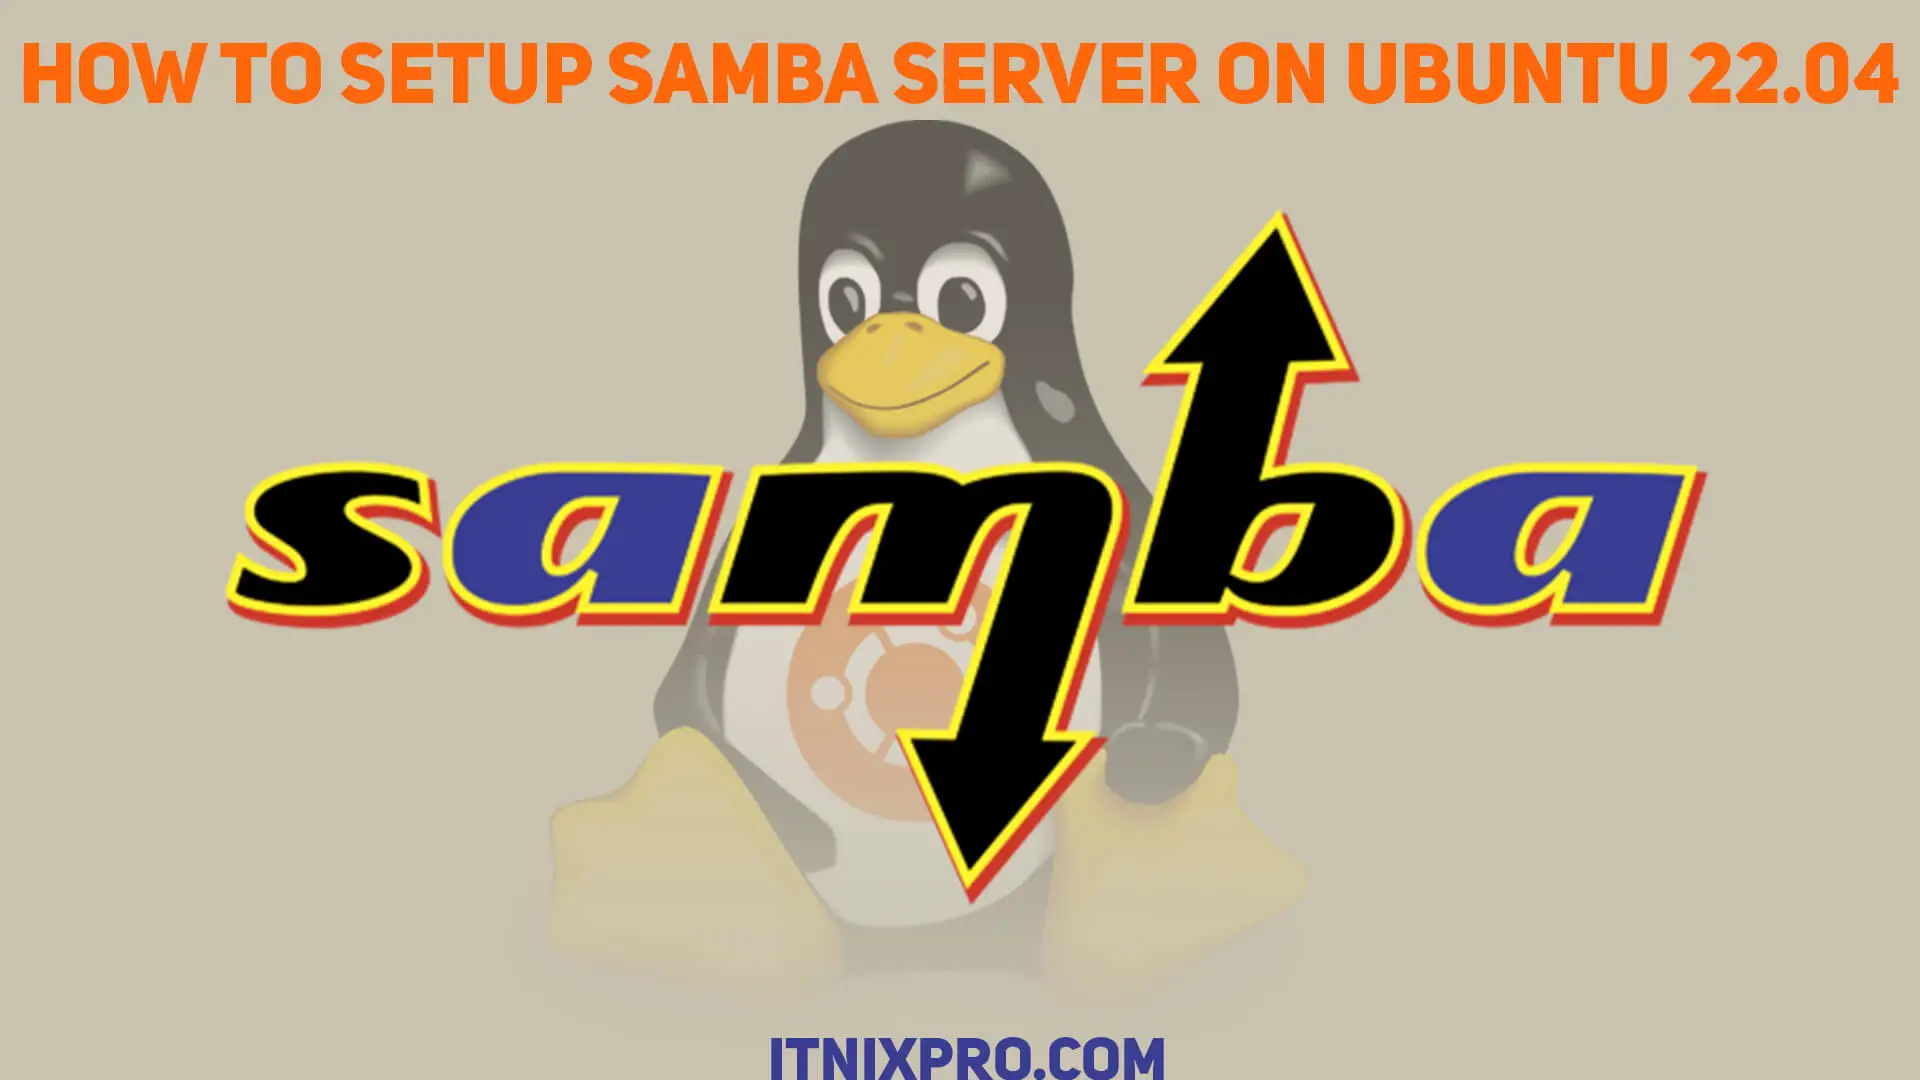 How to Setup Samba Server on Ubuntu 22.04